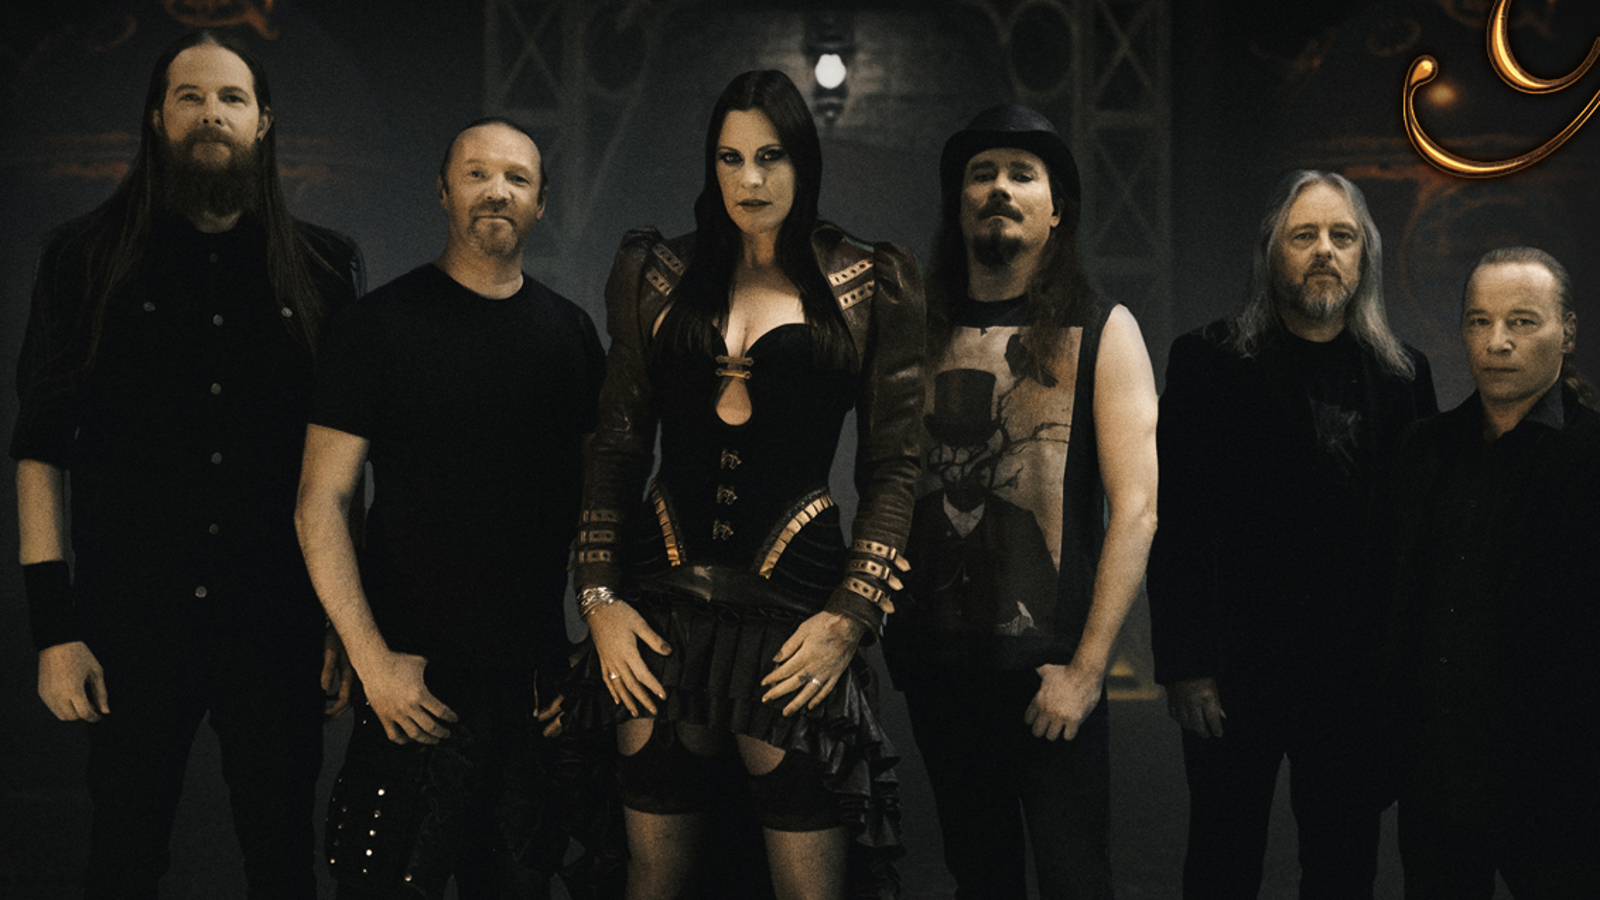 Kuvassa ovat Nightwishin kuusi jäsentä mustissa t-paidoissa.  Kuvan sävy on erittäin tumma.